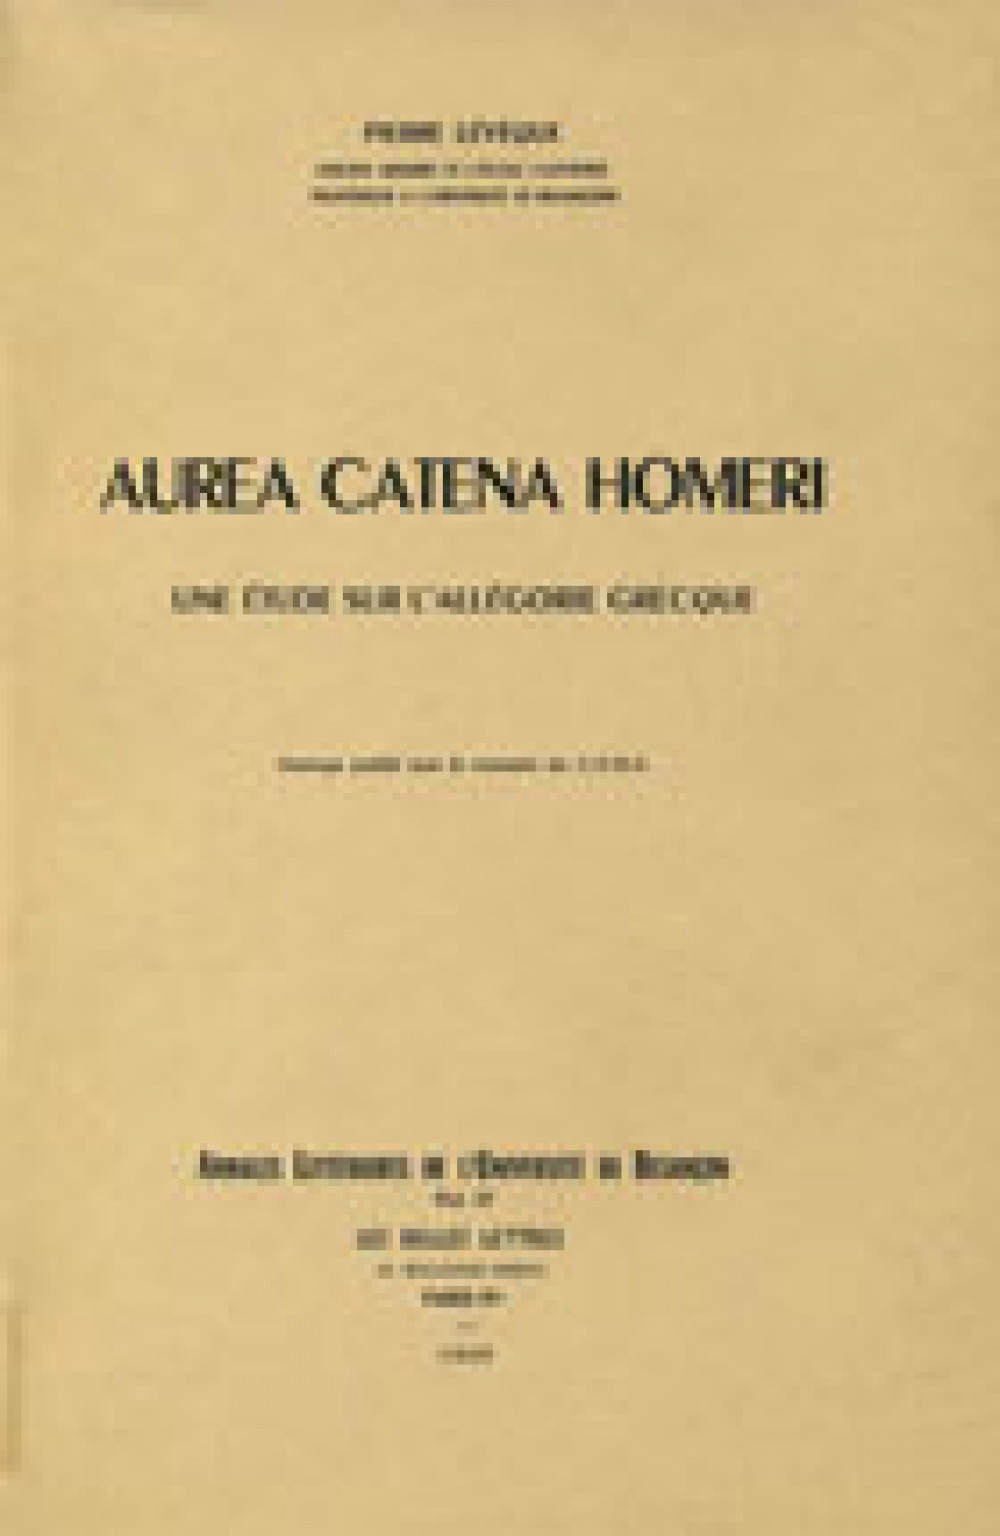 Aurea Catena Homeri